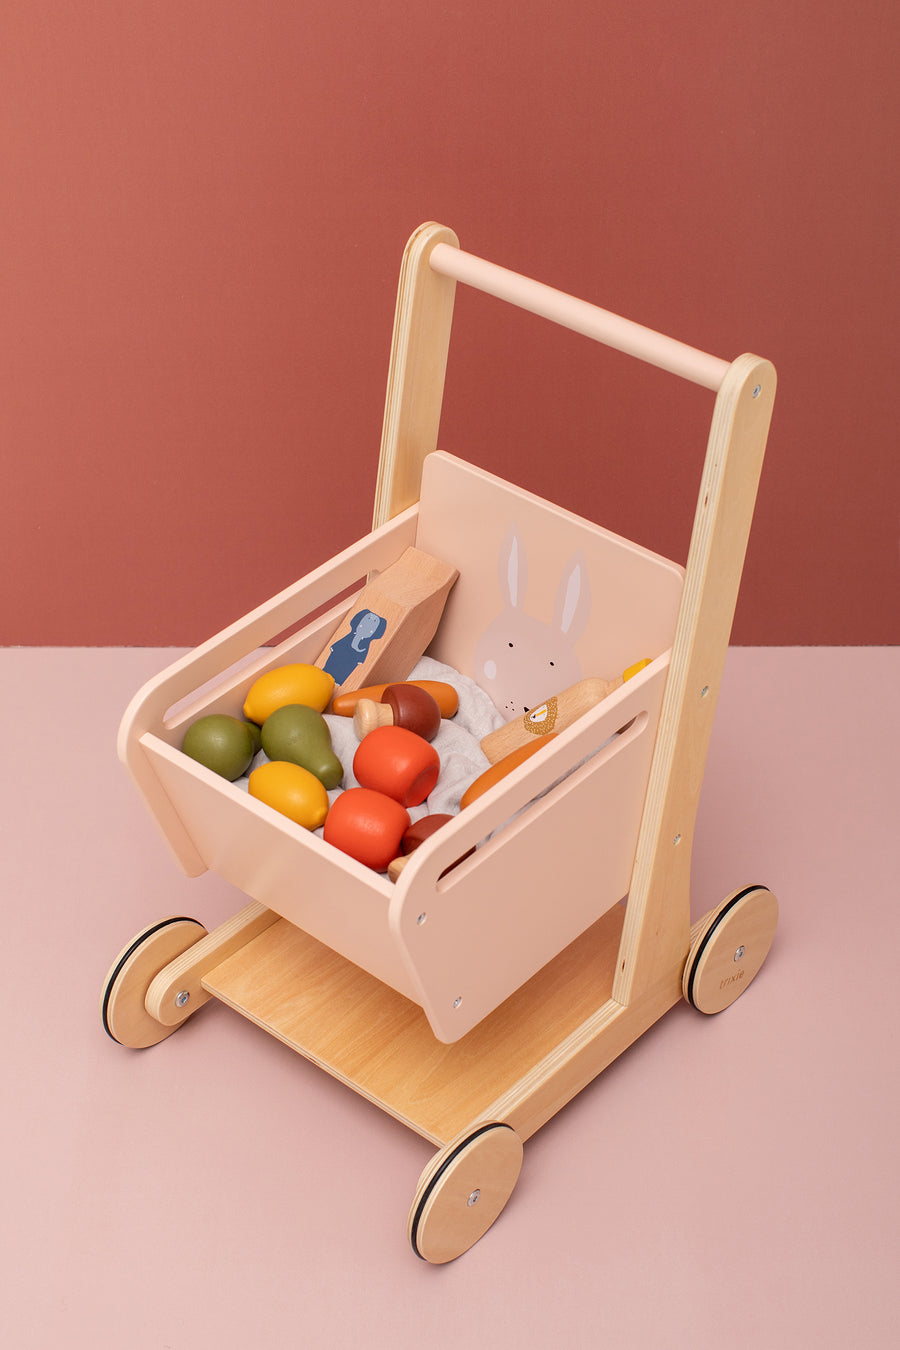 Wooden Shopping Cart - Mrs. Rabbit